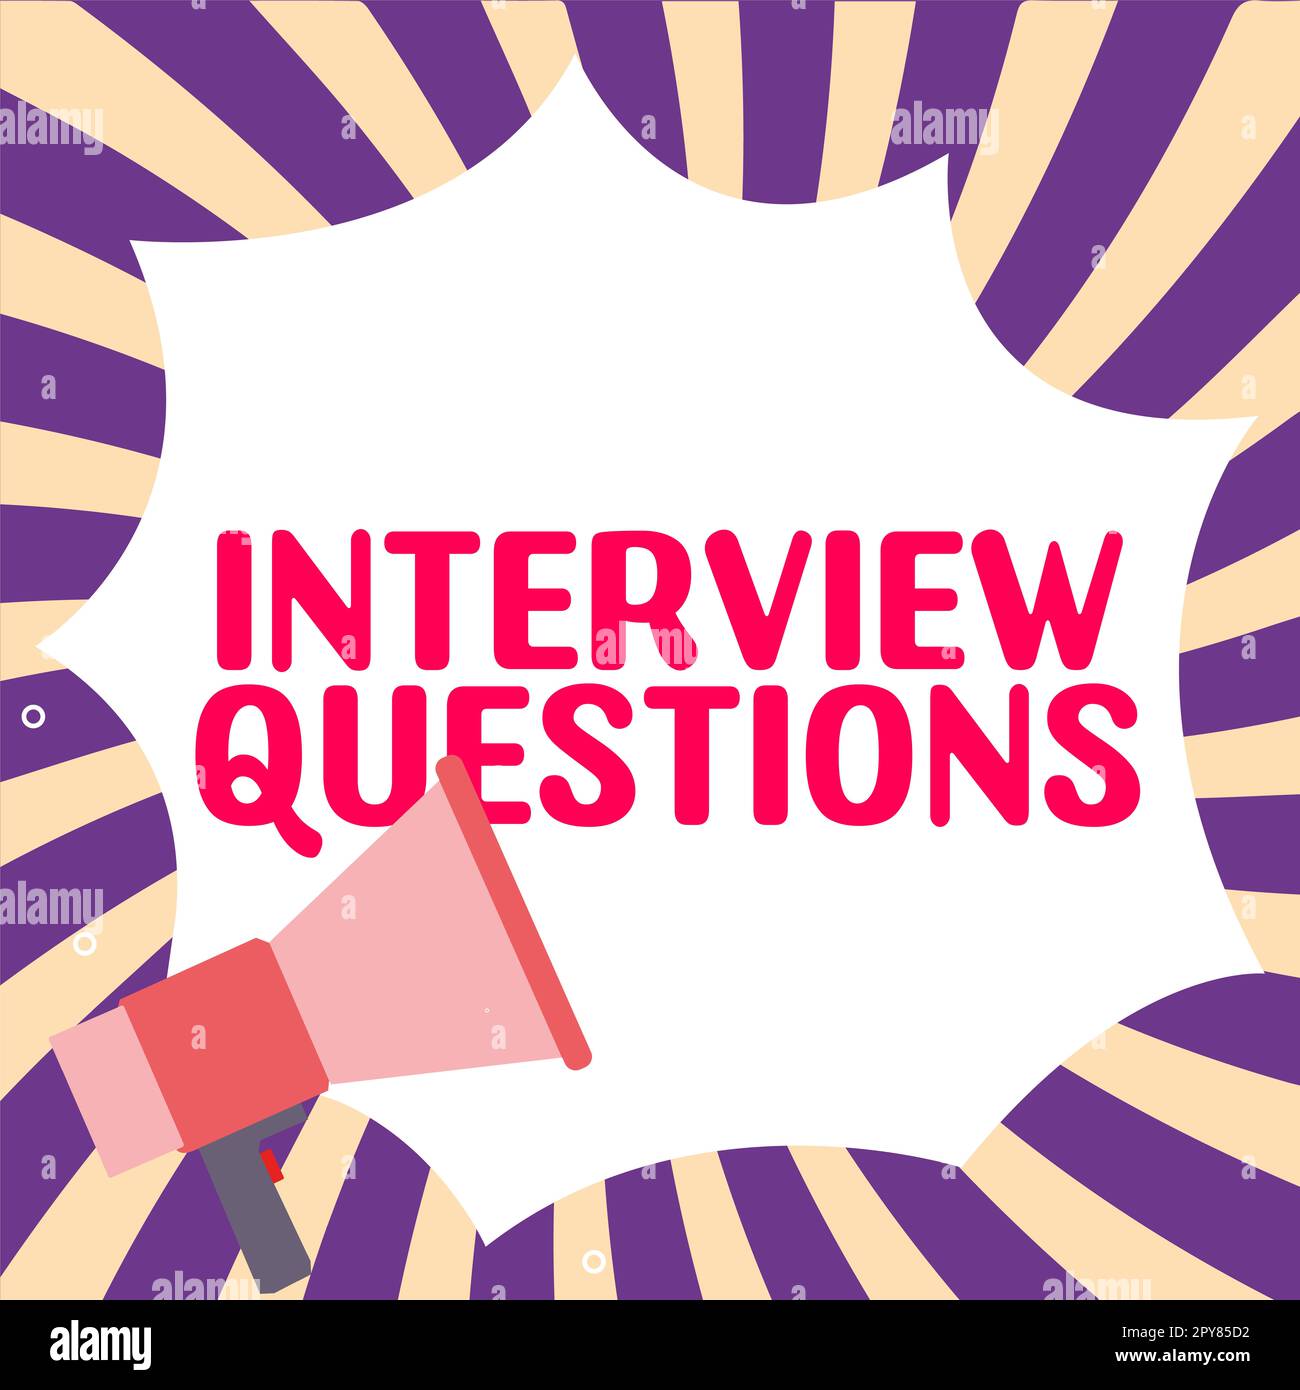 Konzeptionelle Überschrift Interviewfragen. Wort für ein typisches Thema, das während eines Interviews gefragt oder erkundigt wird Stockfoto